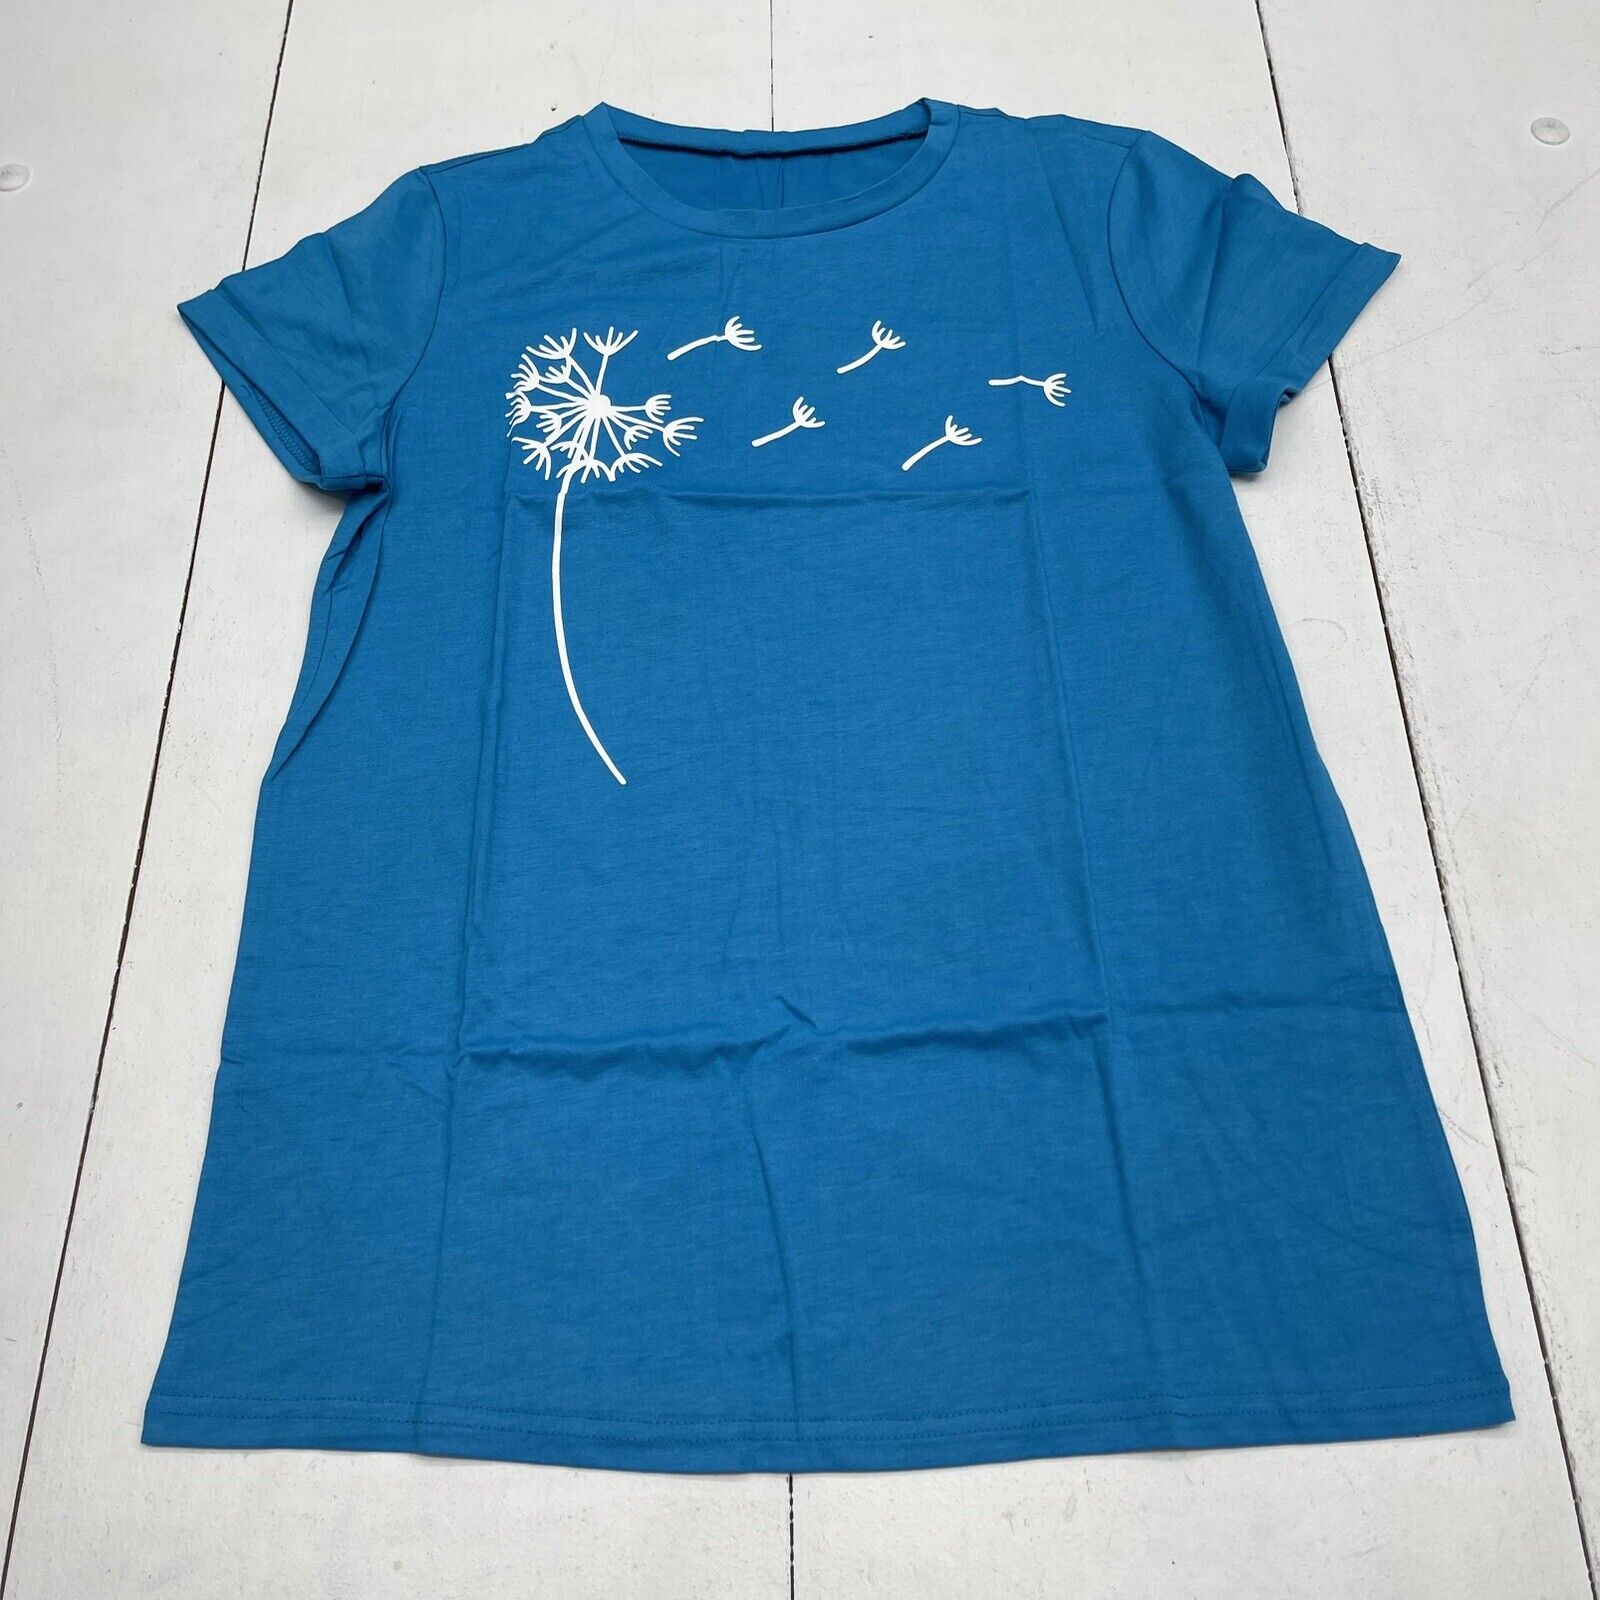 Cicy Bell Blue Dandelion Print Short Sleeve T Shirt Women’s Medium New